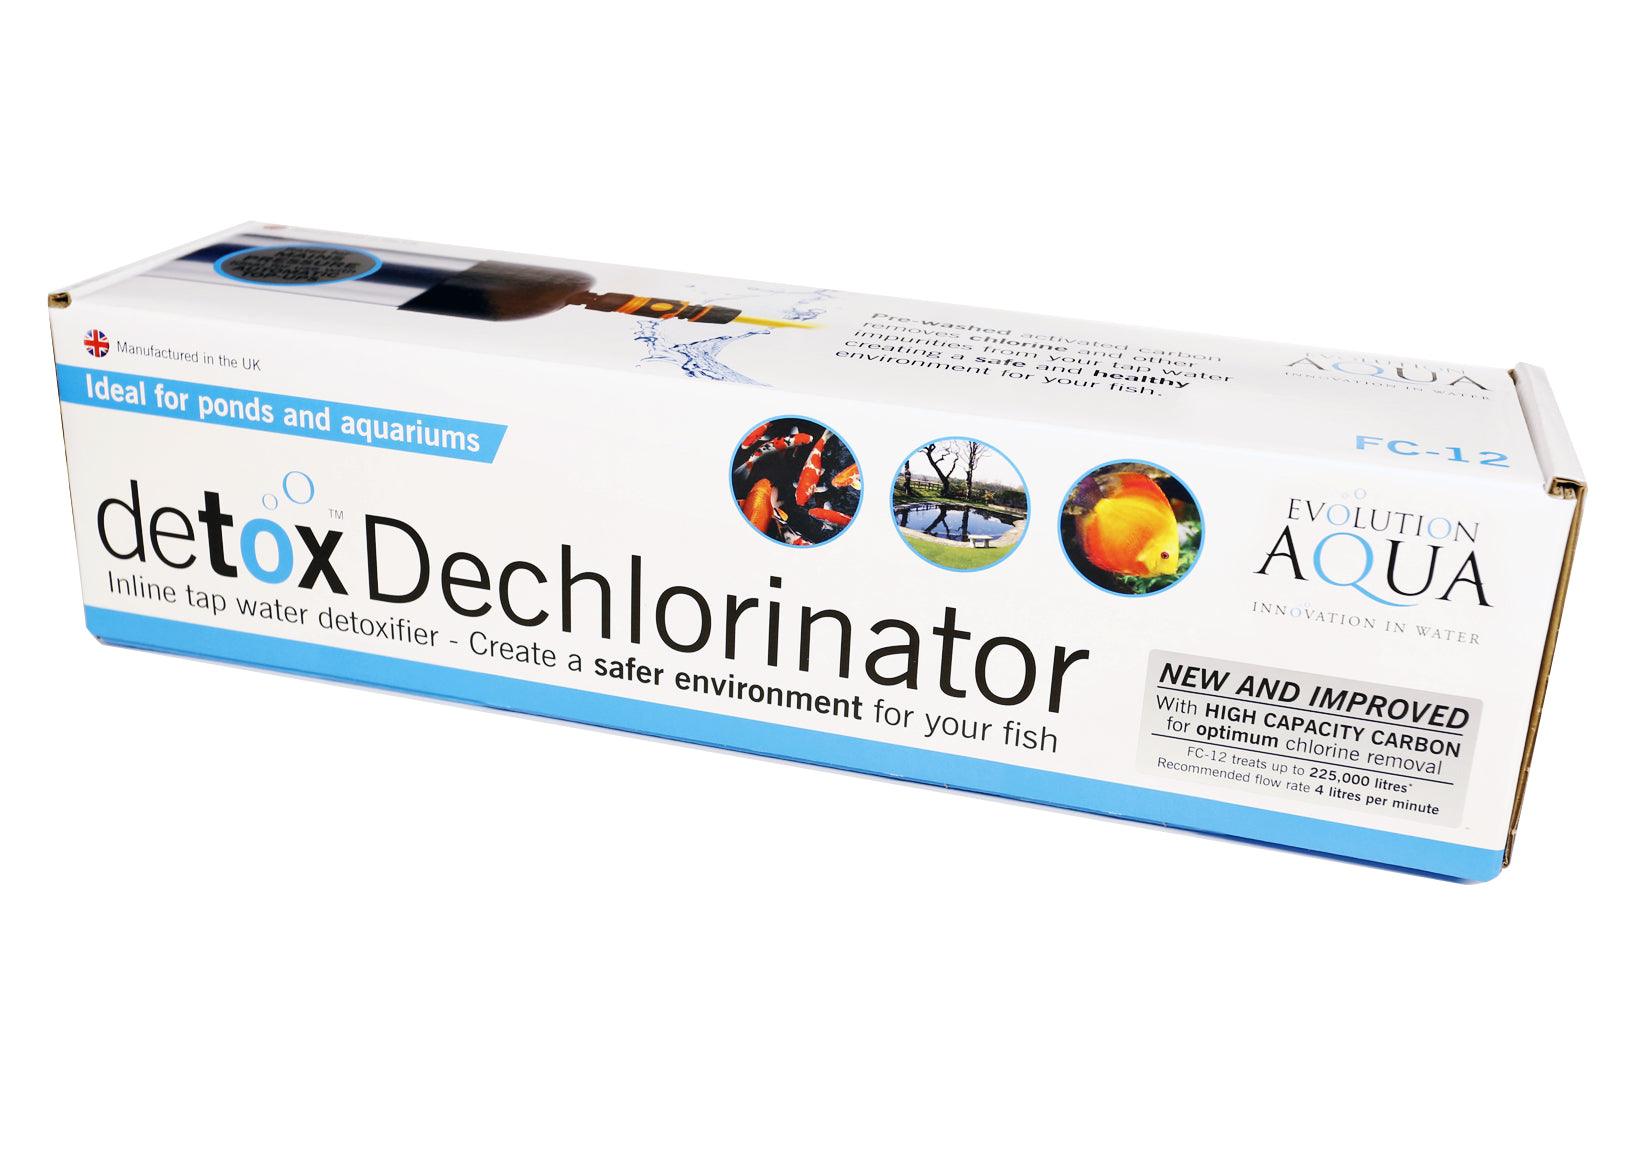 Evolution Aqua Detox Dechlorinator - Play It Koi